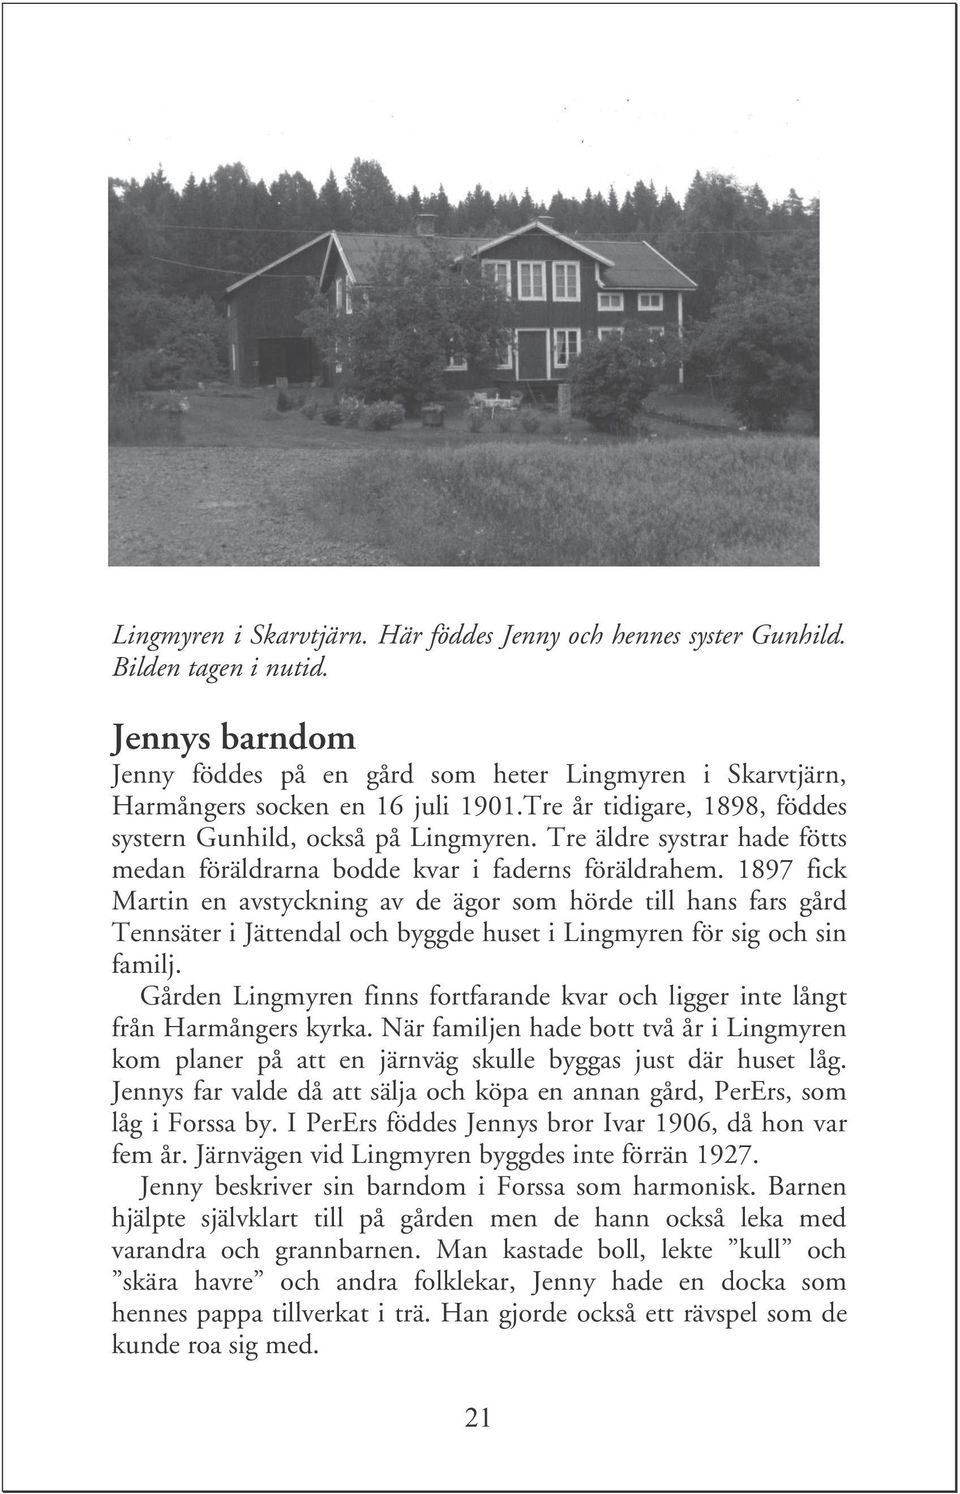 1897 fick Martin en avstyckning av de ägor som hörde till hans fars gård Tennsäter i Jättendal och byggde huset i Lingmyren för sig och sin familj.